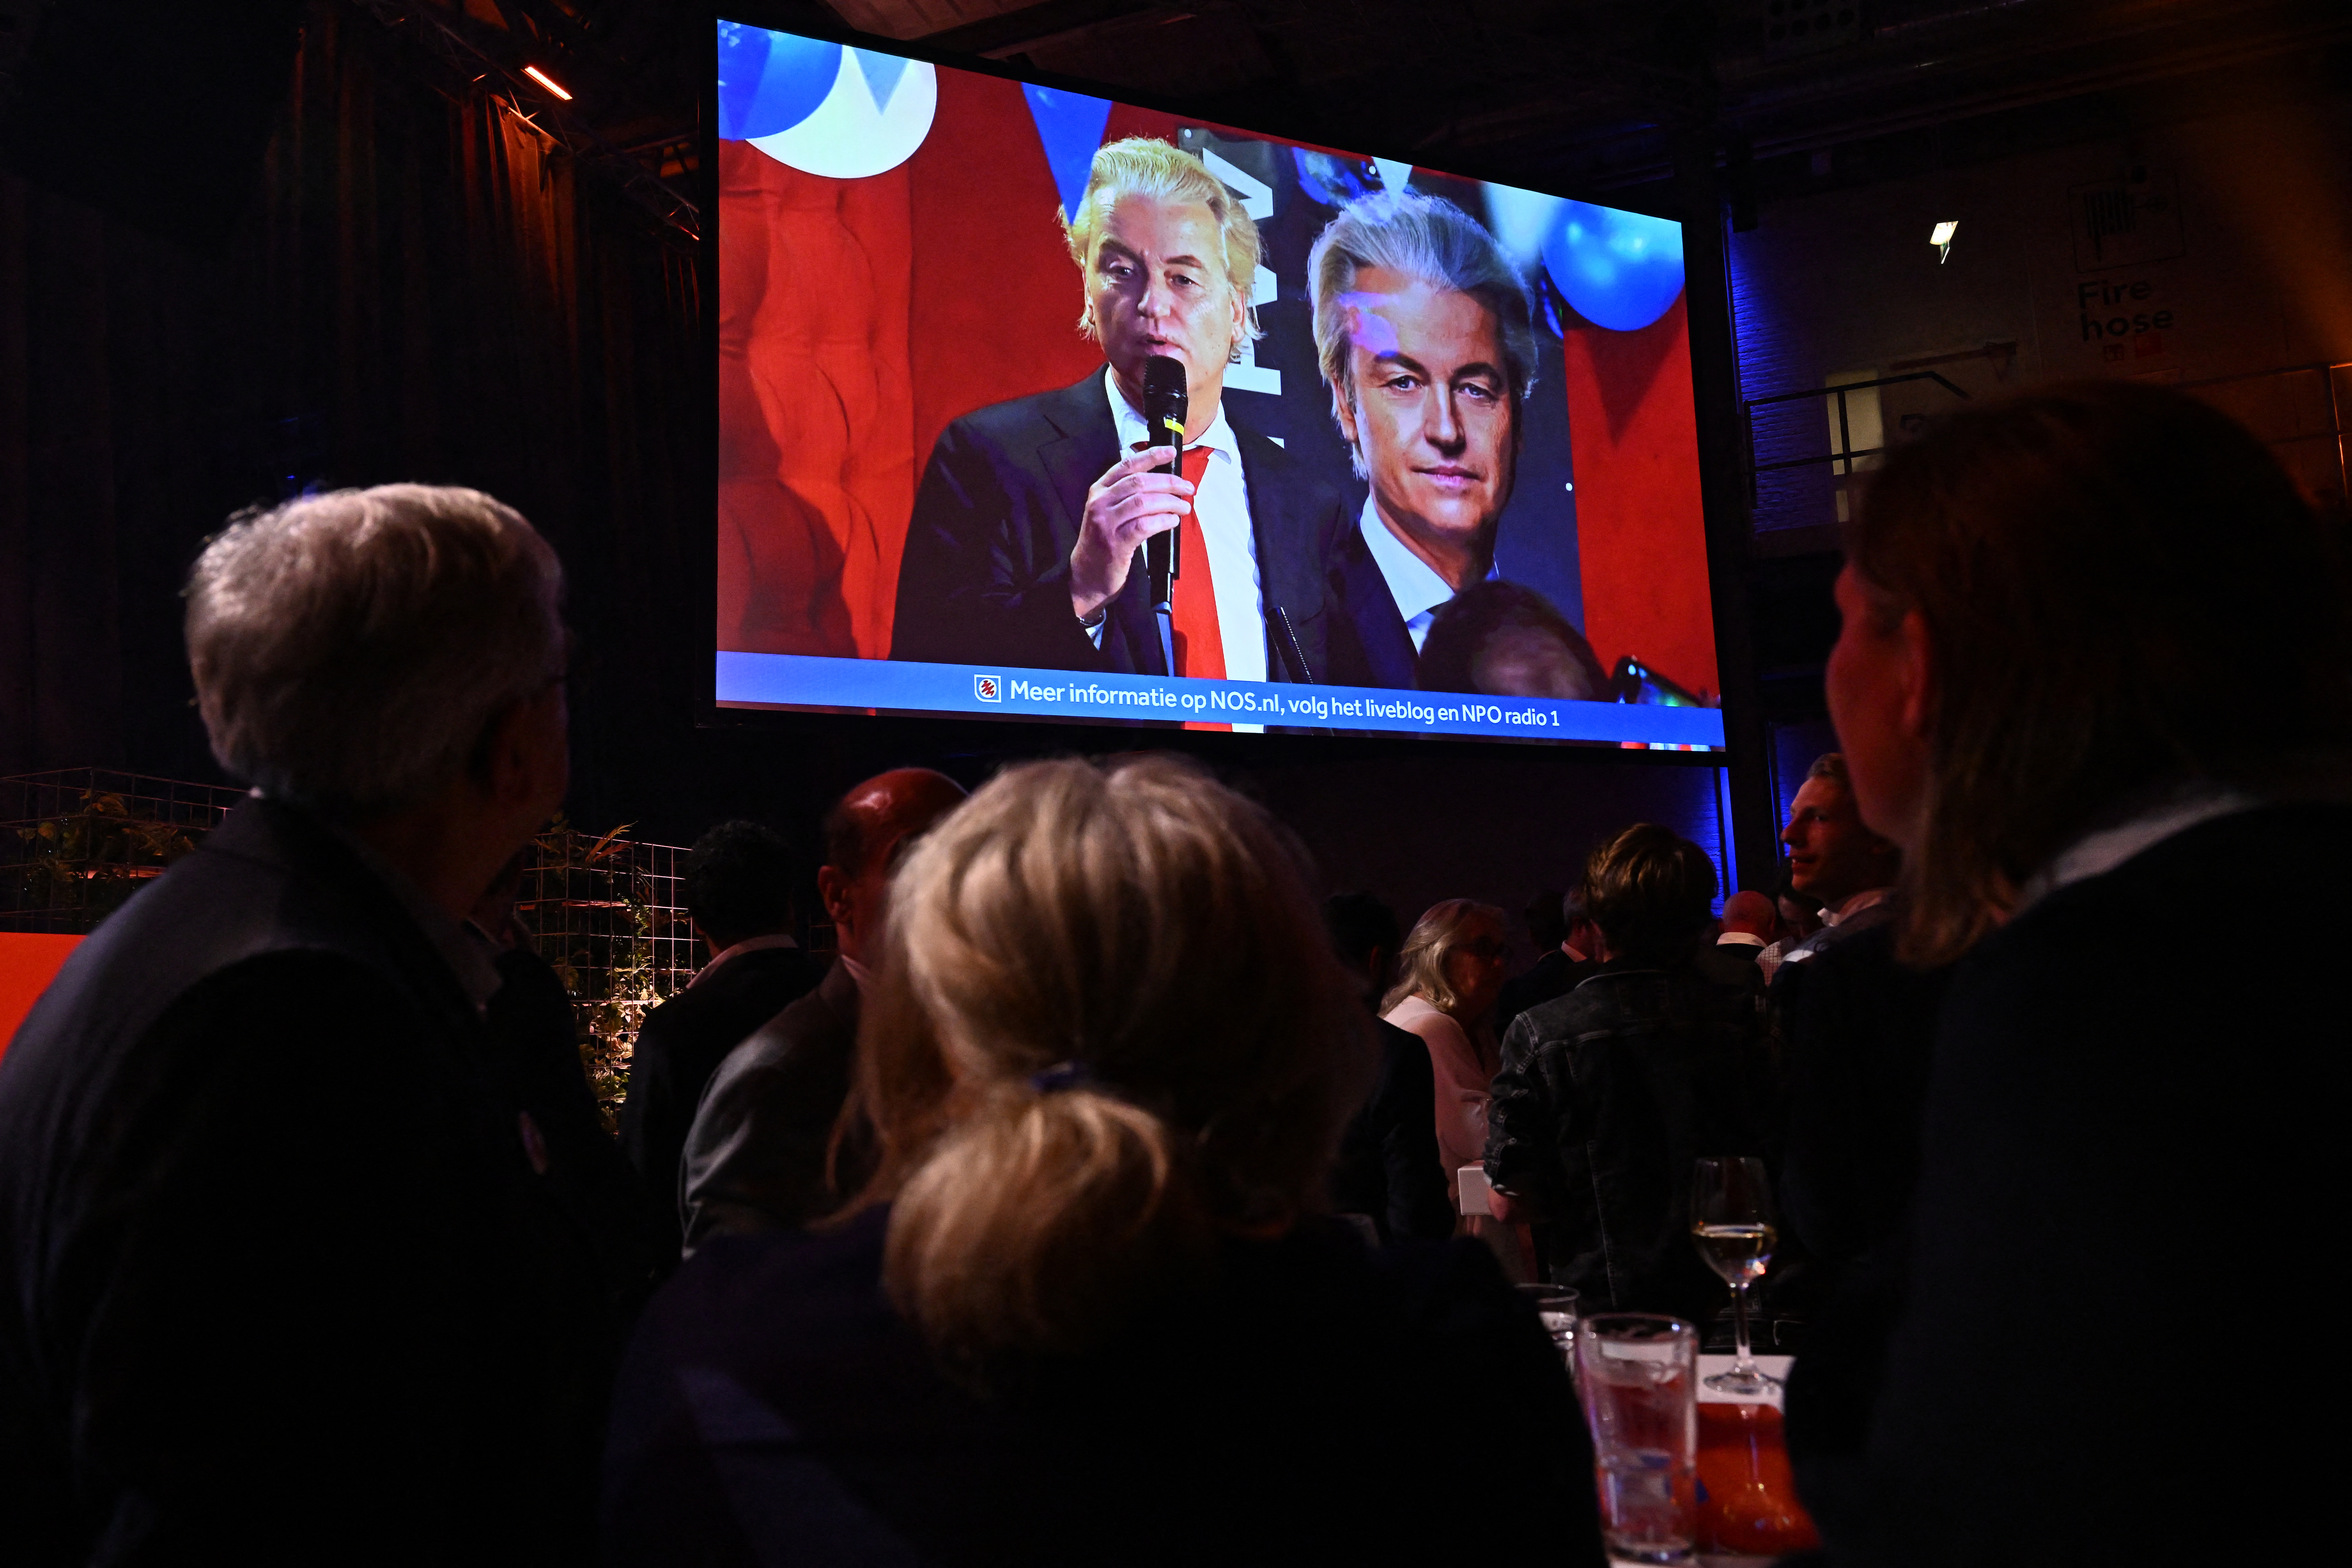 Βουλευτικές εκλογές στην Ολλανδία: Τα exit poll δείχνουν νίκη της ακροδεξιάς του Βίλντερς